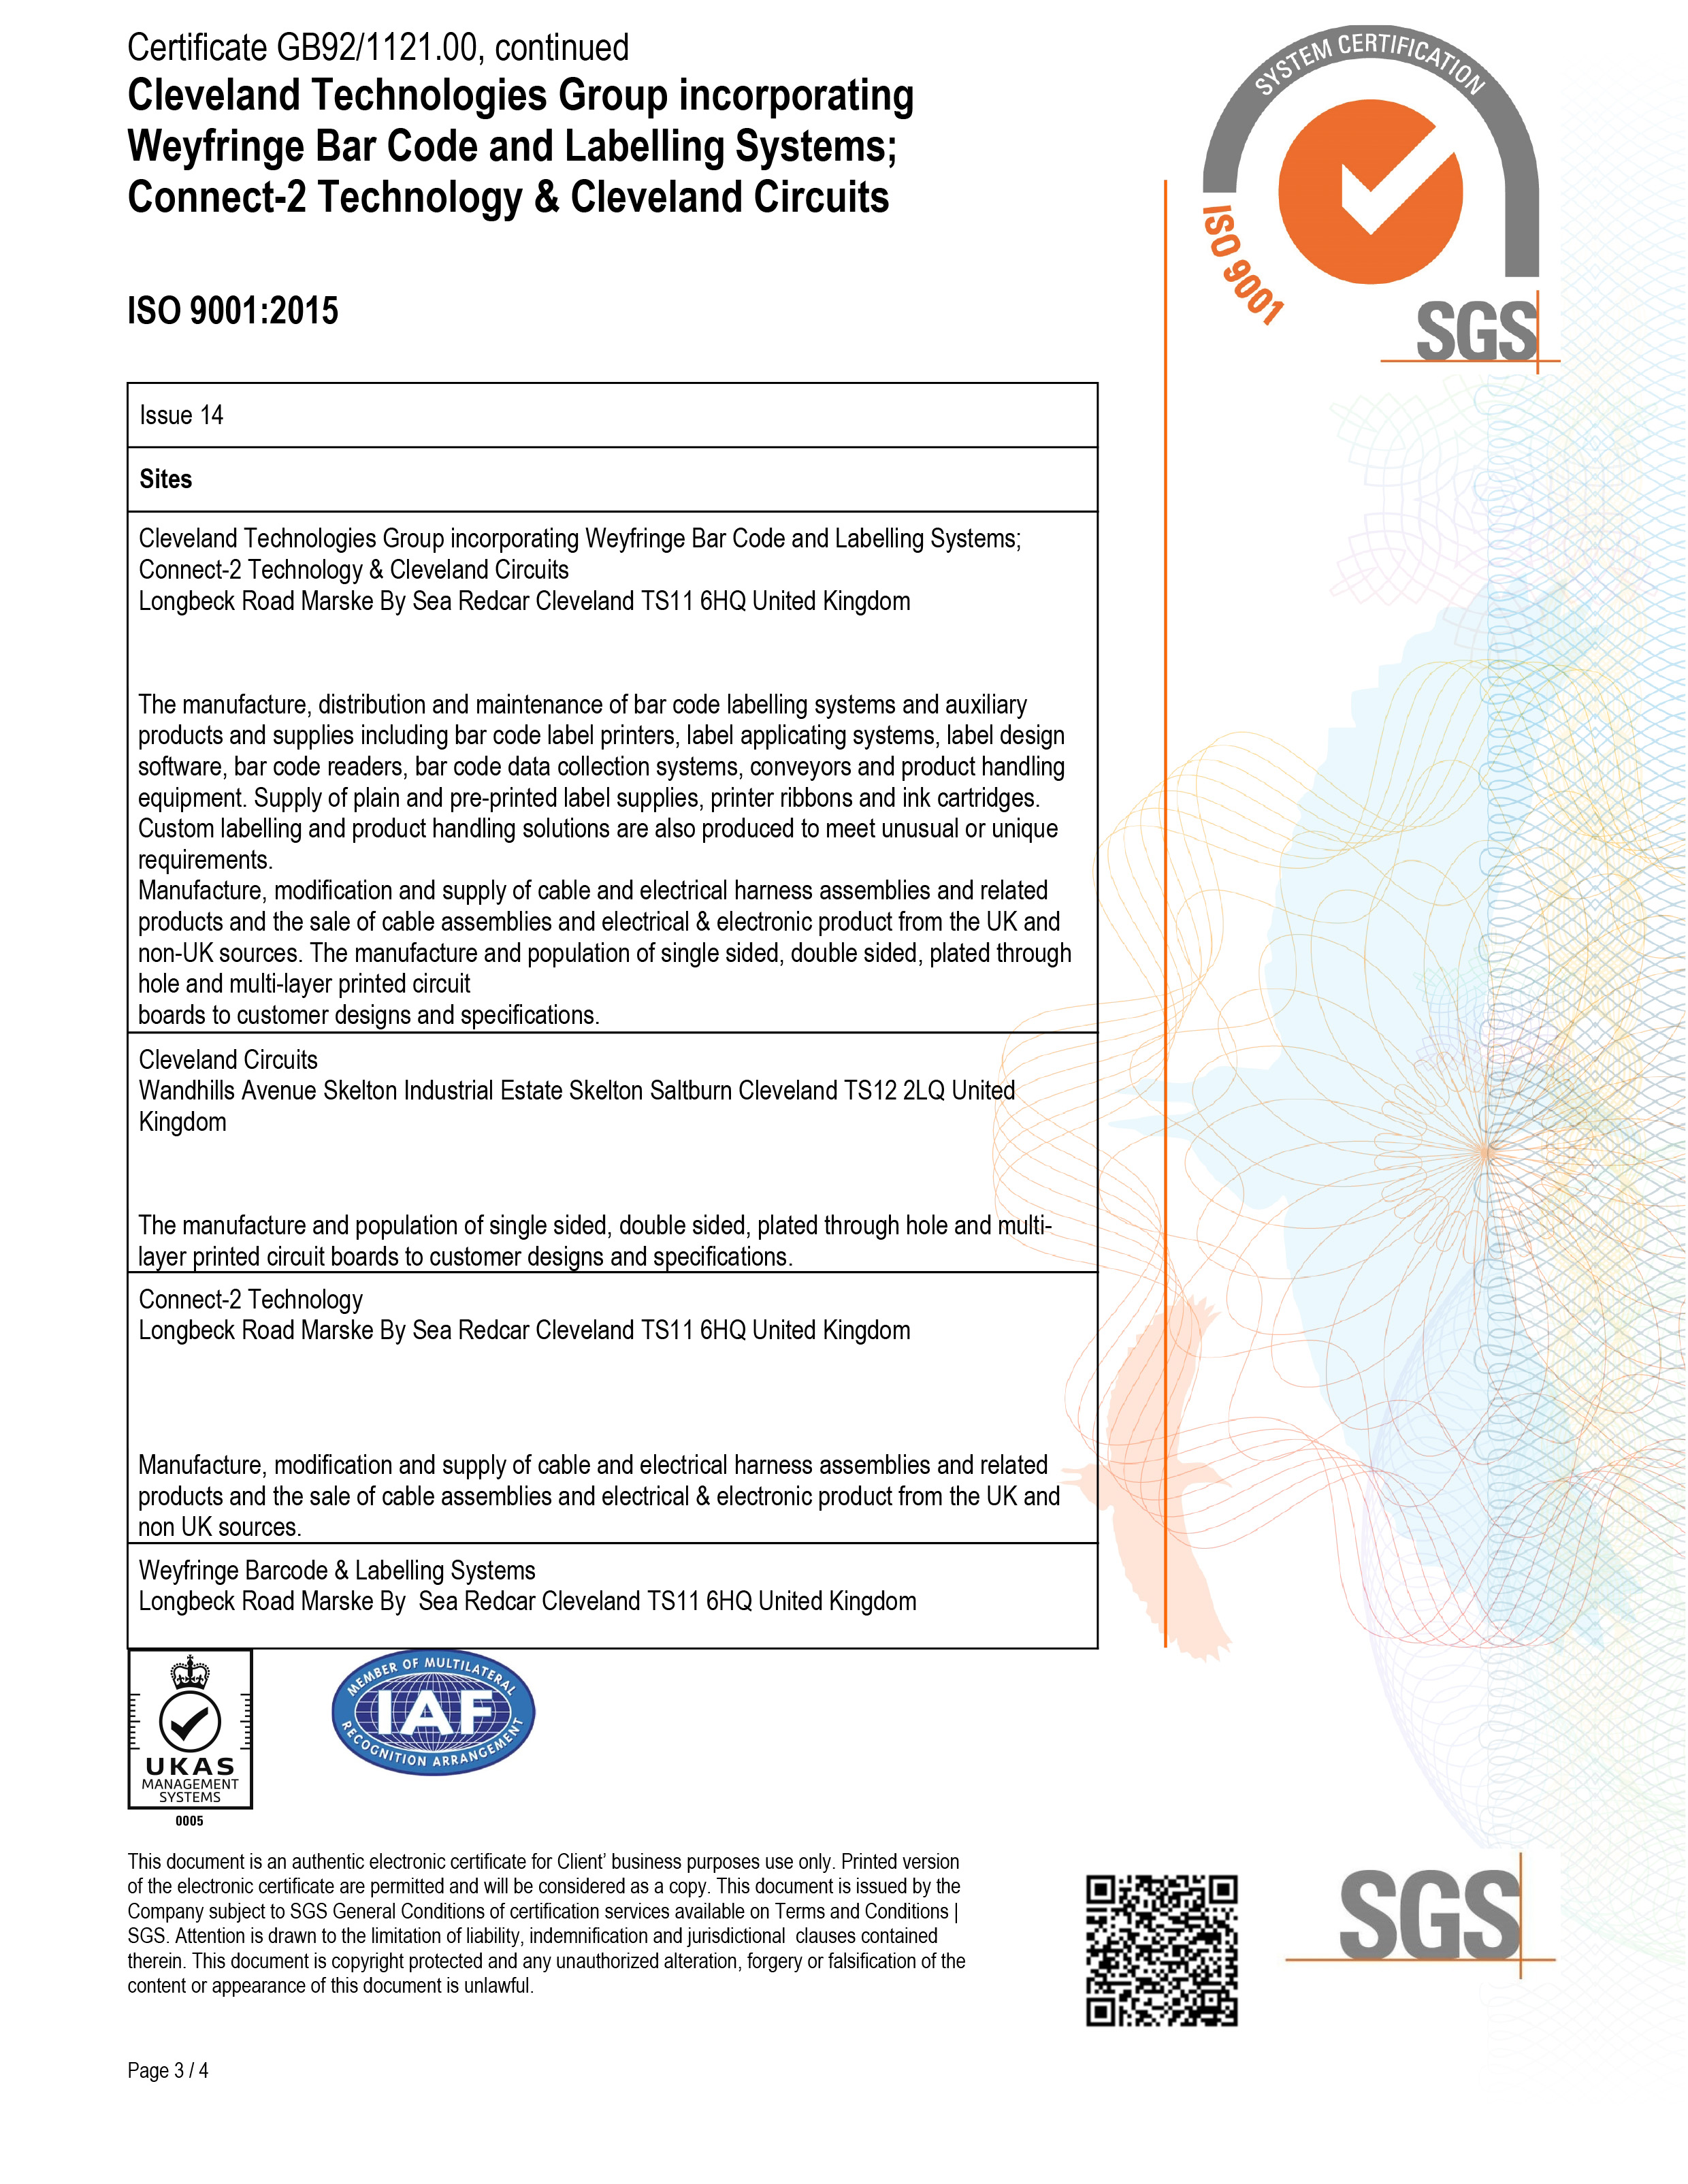 CTG Ltd ISO9001:2015 cert 3